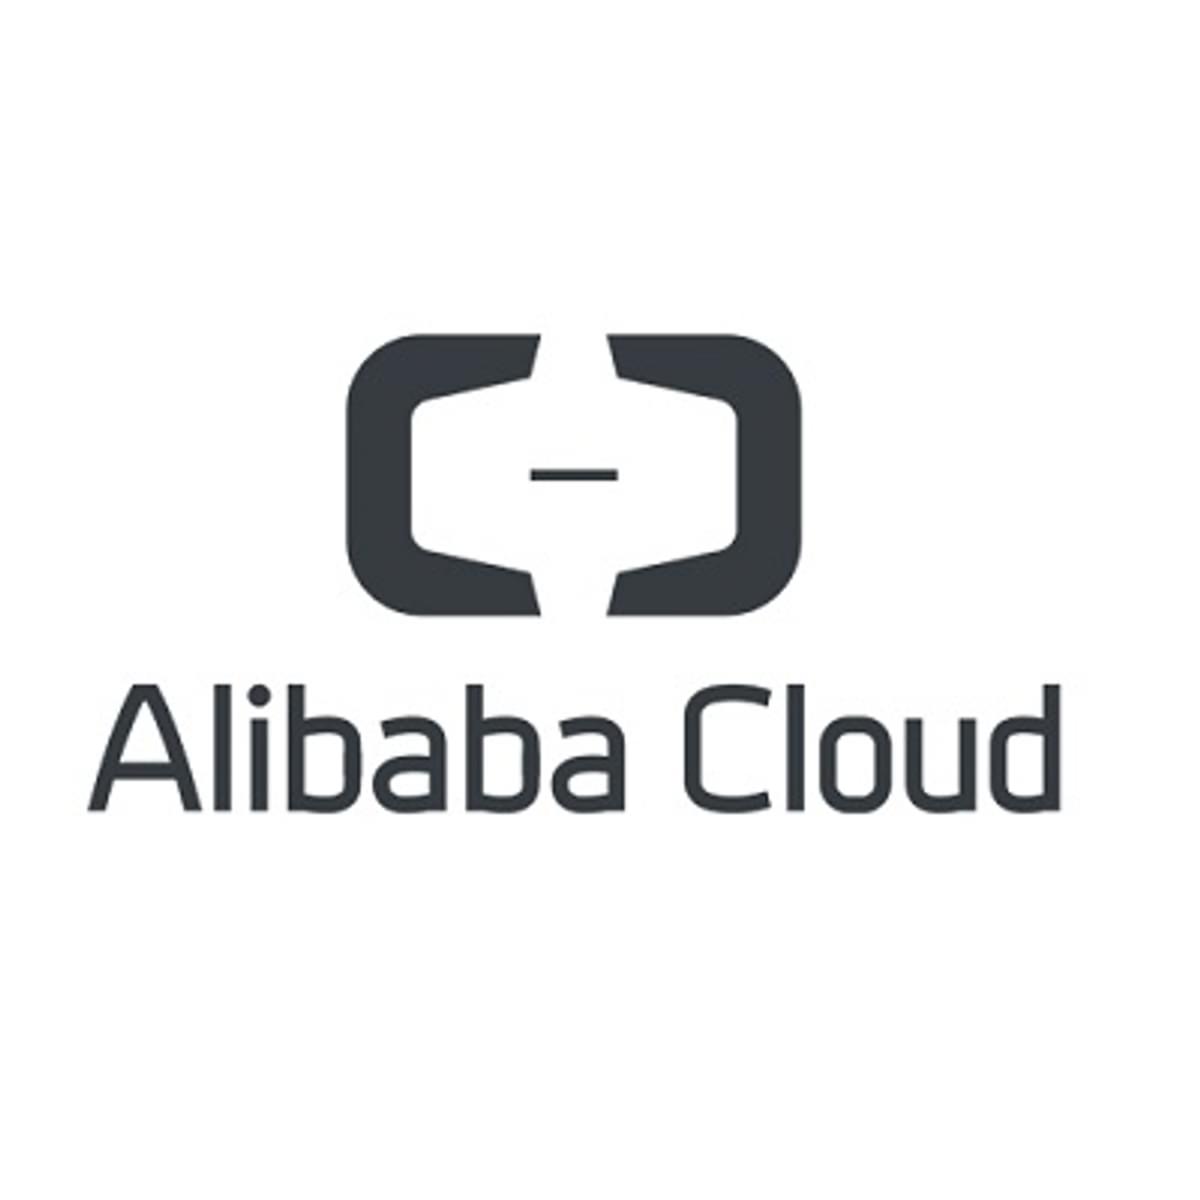 Alibaba investeert miljarden dollars in cloud services image